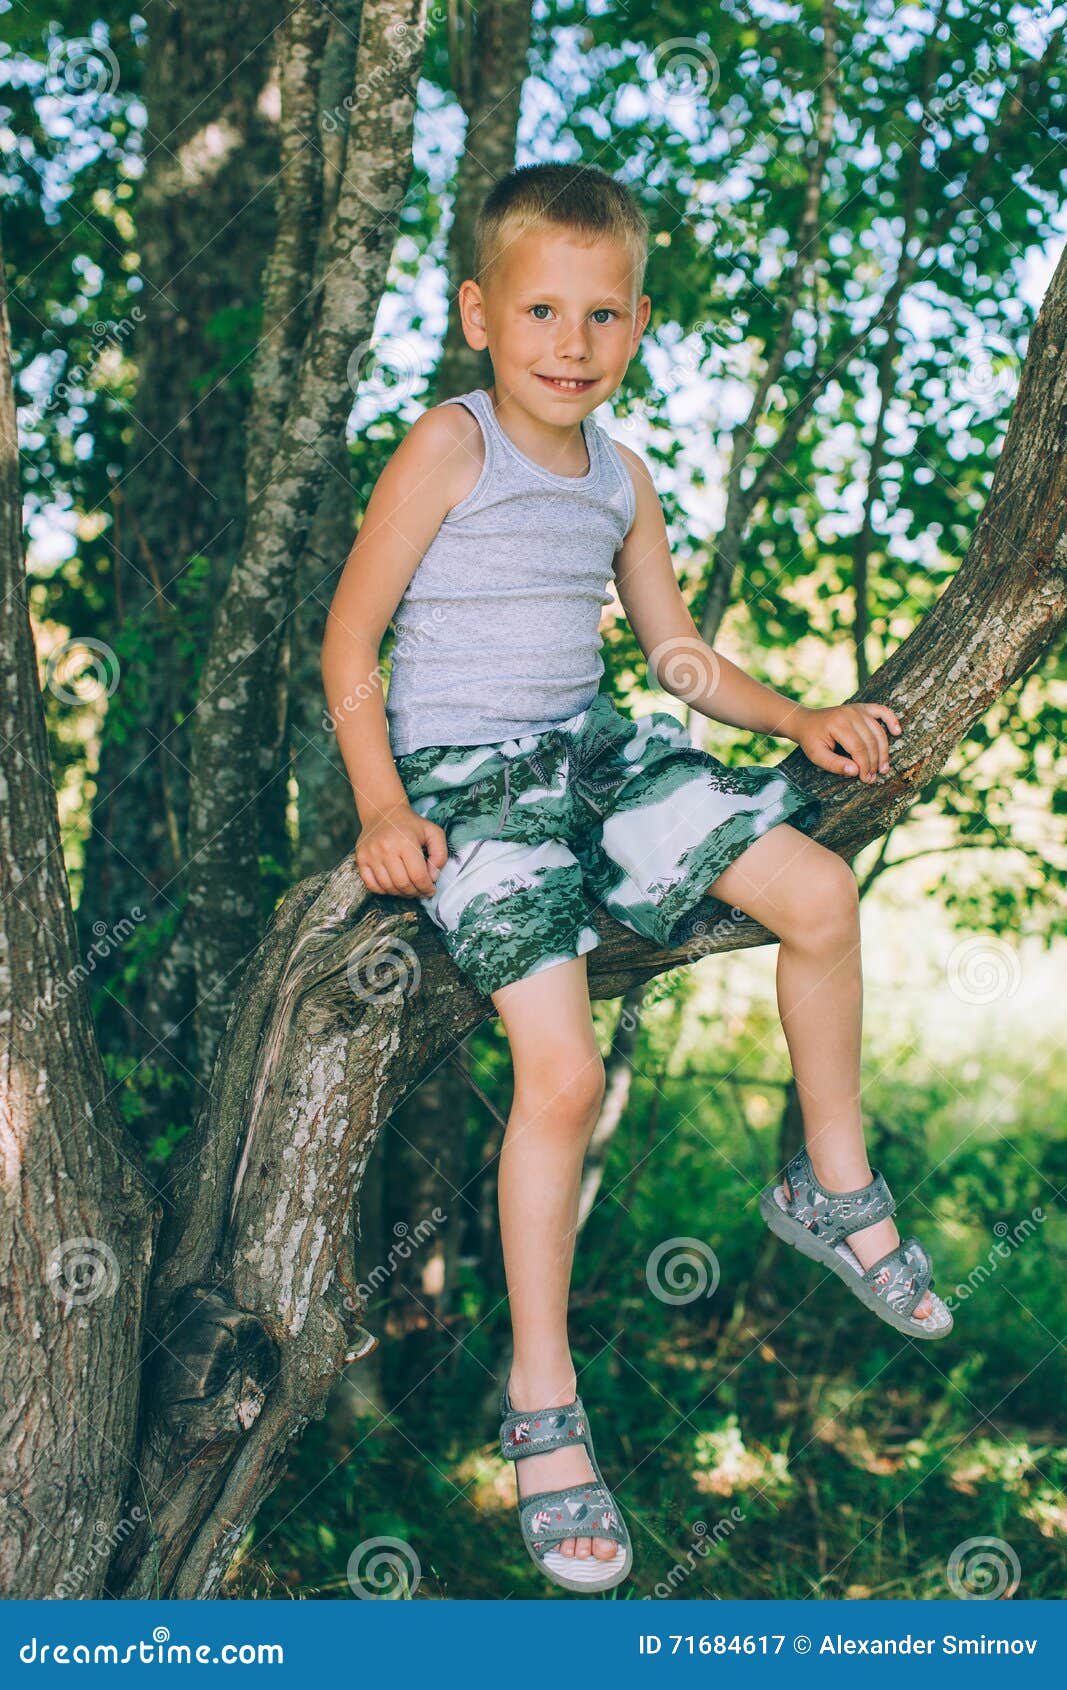 Брухунова в шортах. Шорты для мальчика. Ребенок сидит в шортах. Лес мальчики деревья. Ноги мальчика.